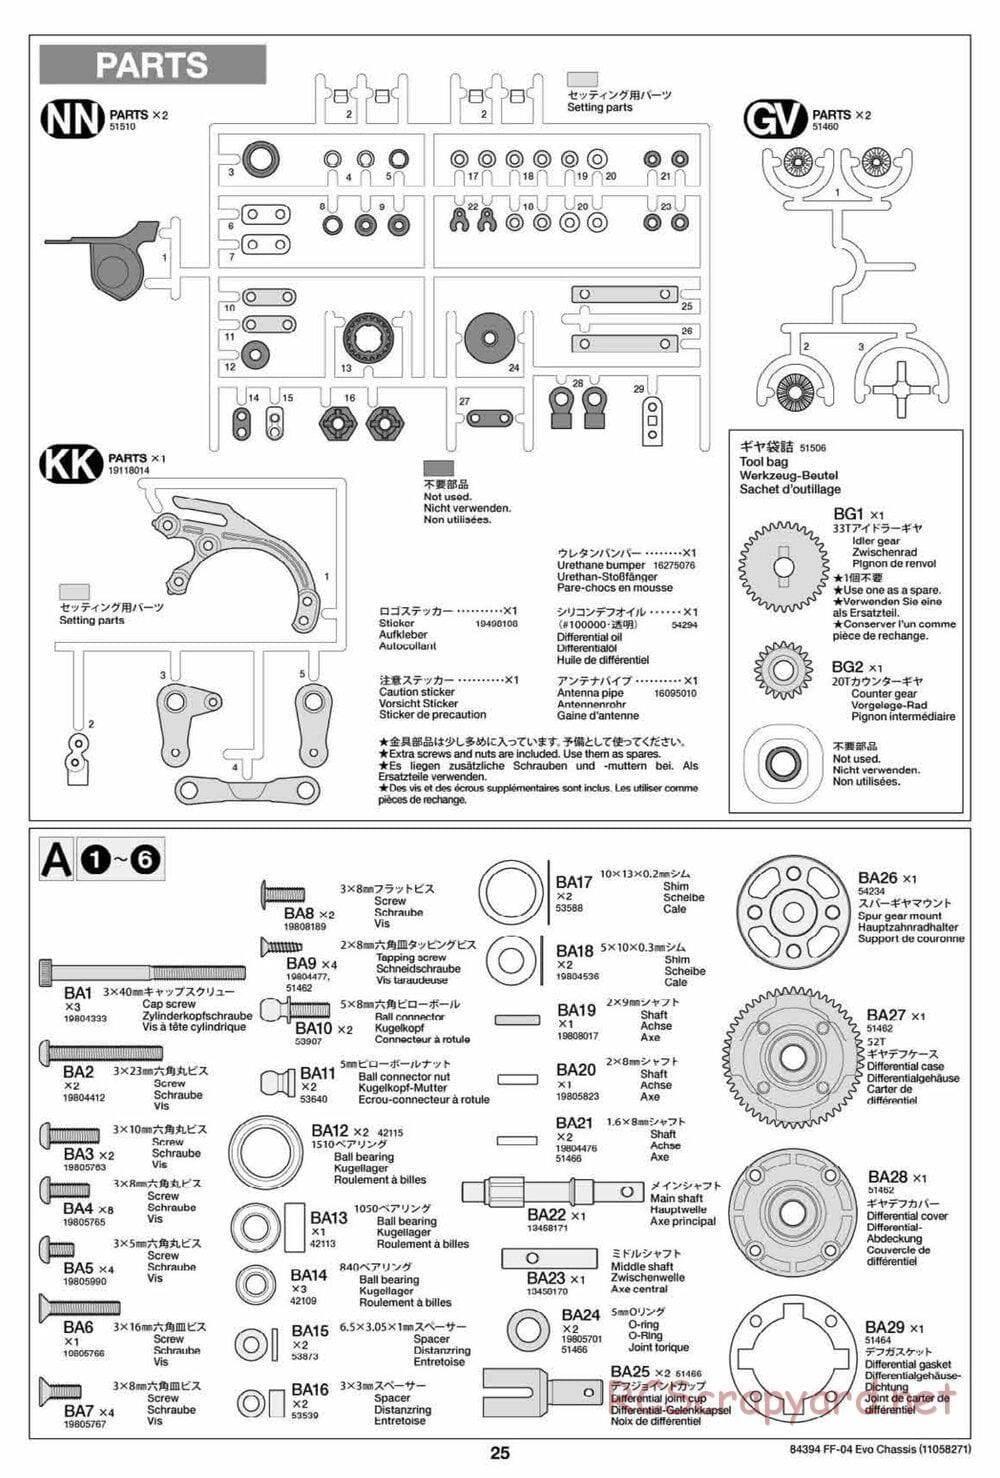 Tamiya - FF-04 Evo Chassis - Manual - Page 25